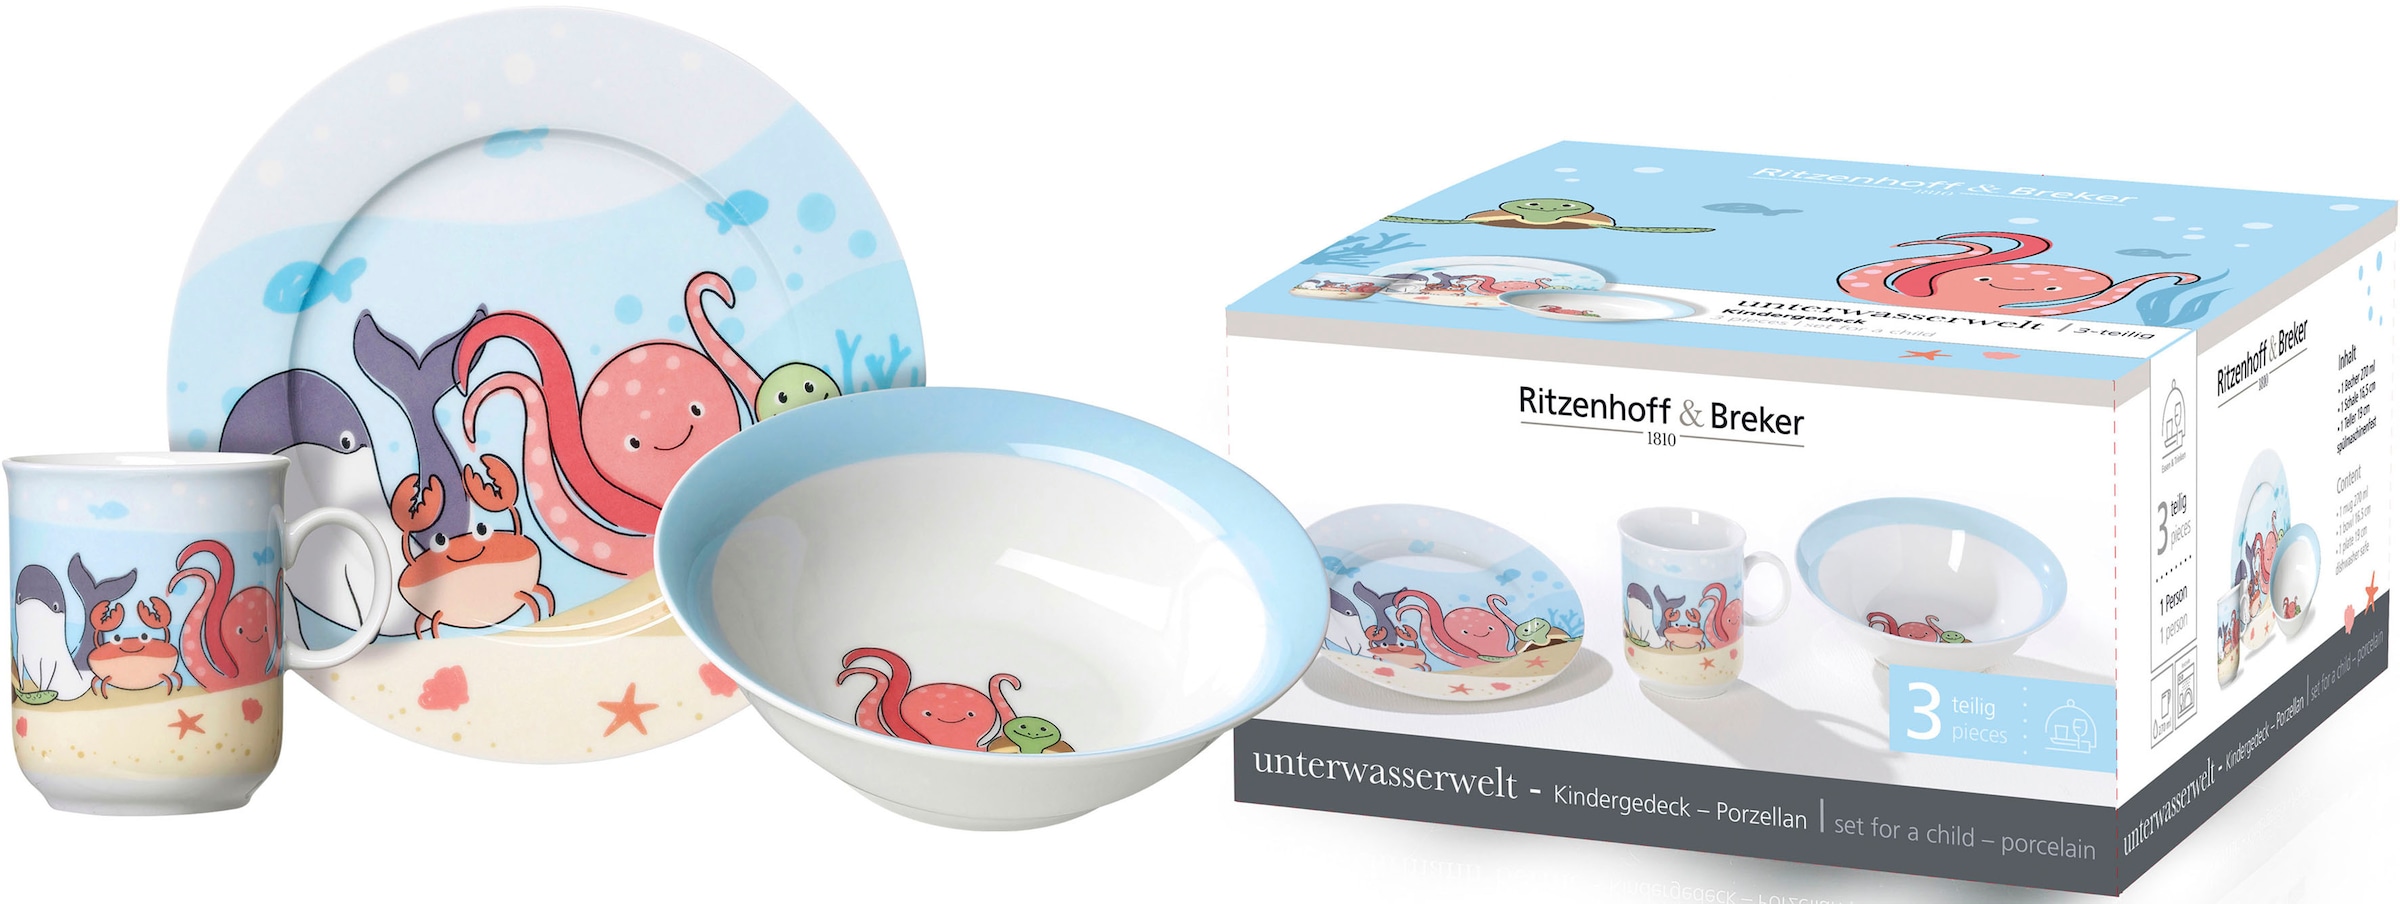 Ritzenhoff & Breker Kindergeschirr-Set »Unterwasserwelt«, (Set, 3 tlg.), im dekorativen Geschenkkarton